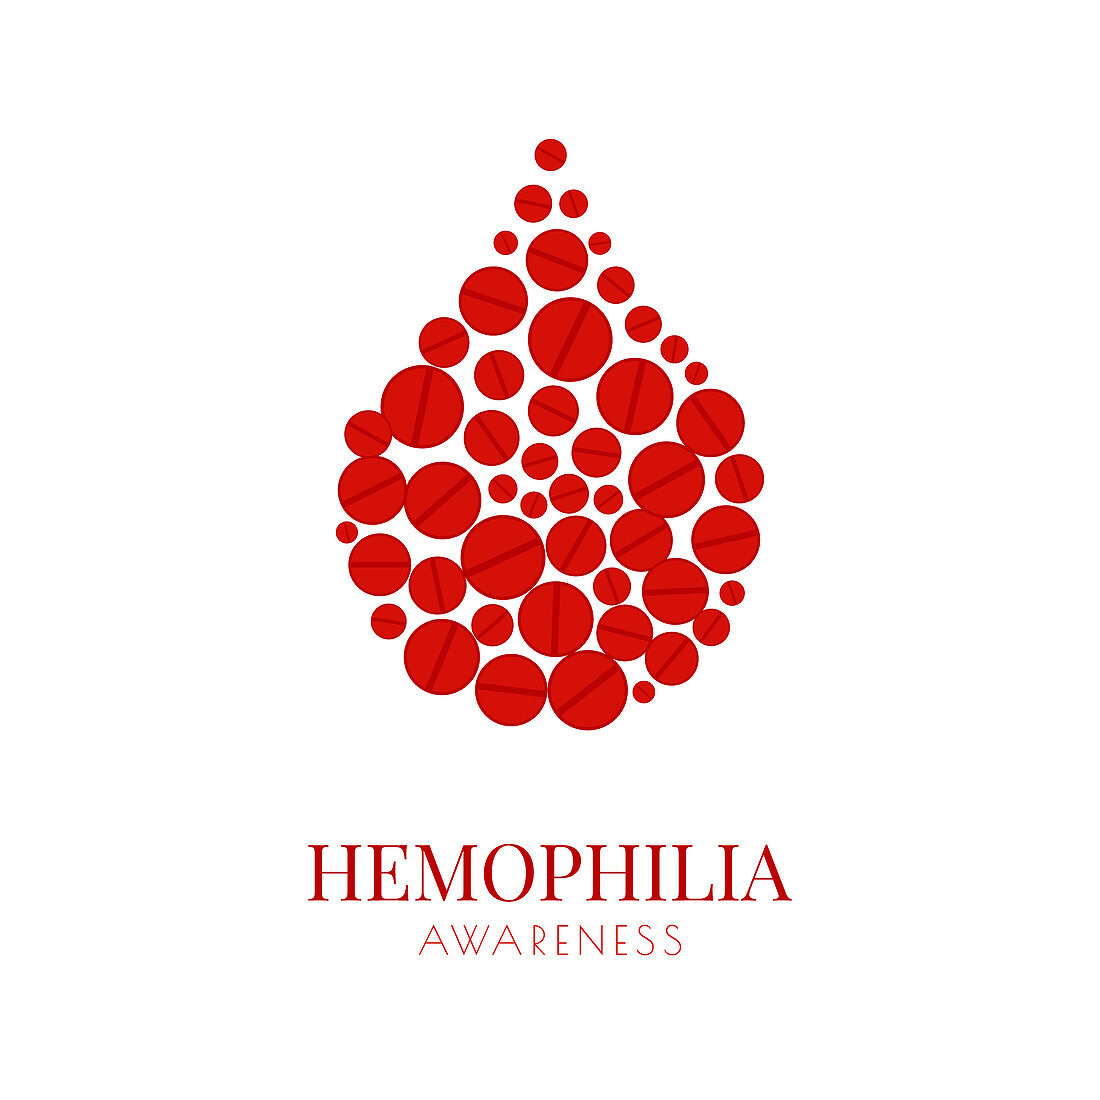 Haemophilia, conceptual illustration